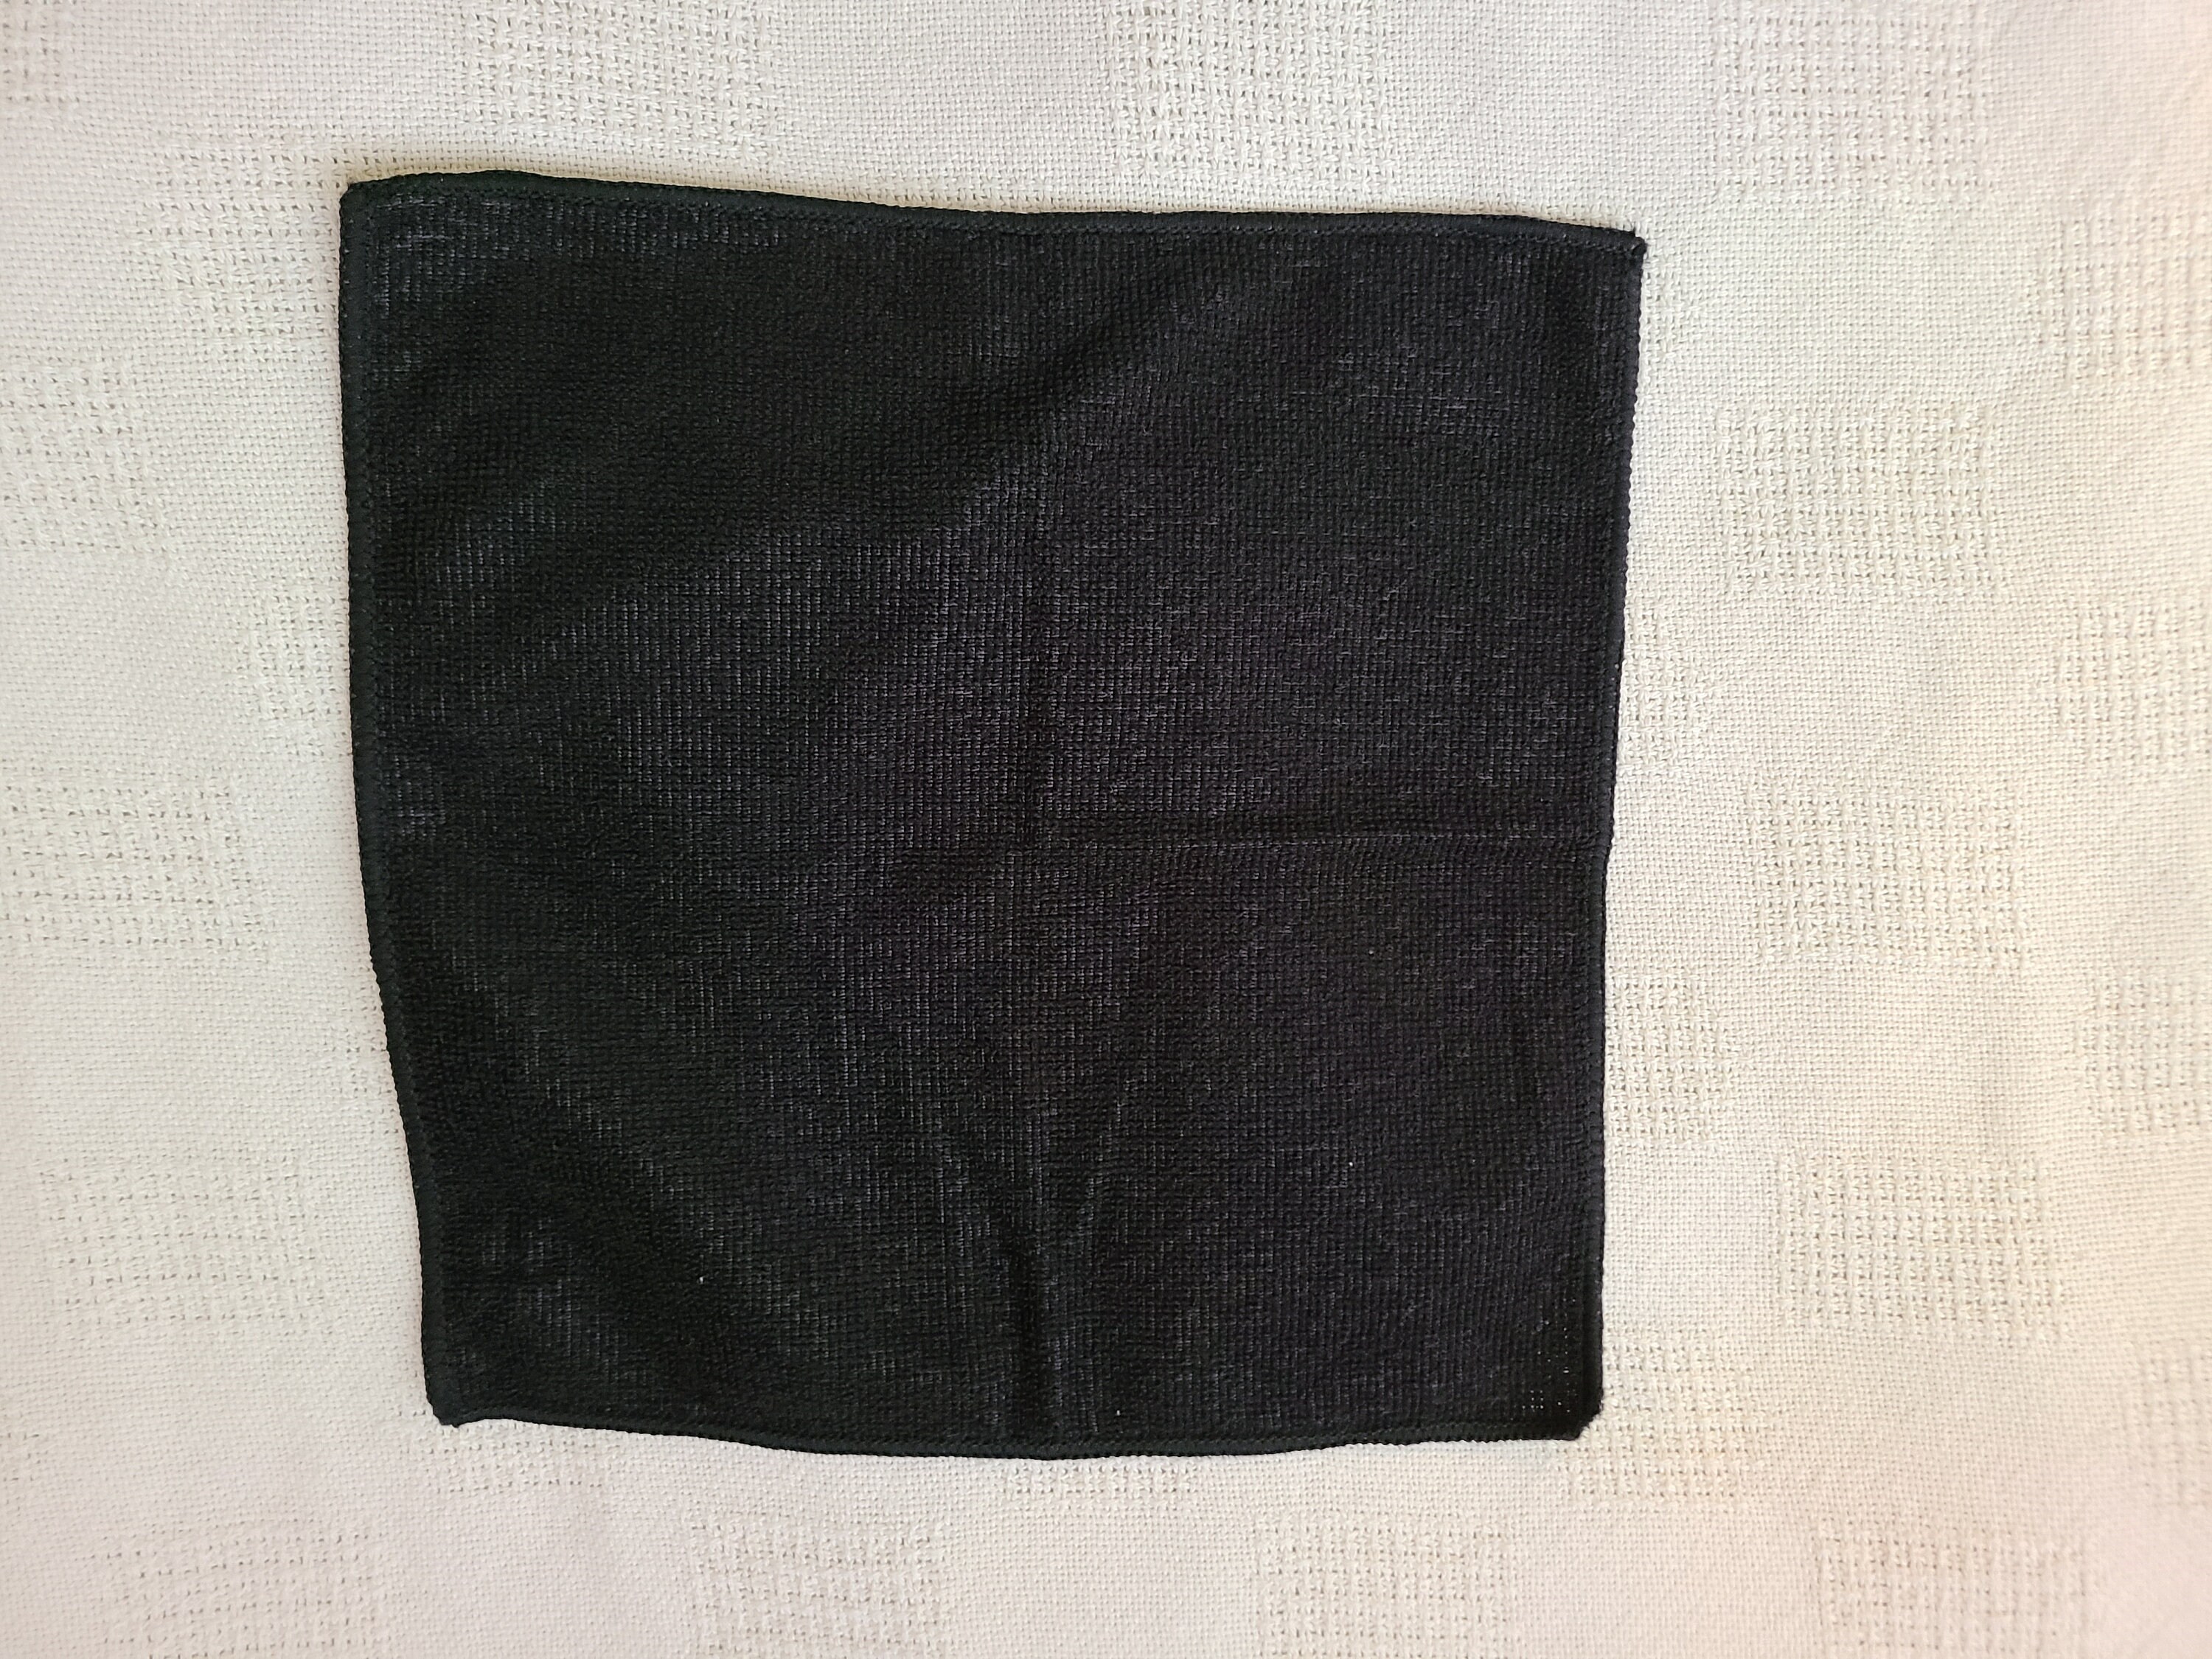 Thin Black Wash Cloth4-Piece Set | Etsy